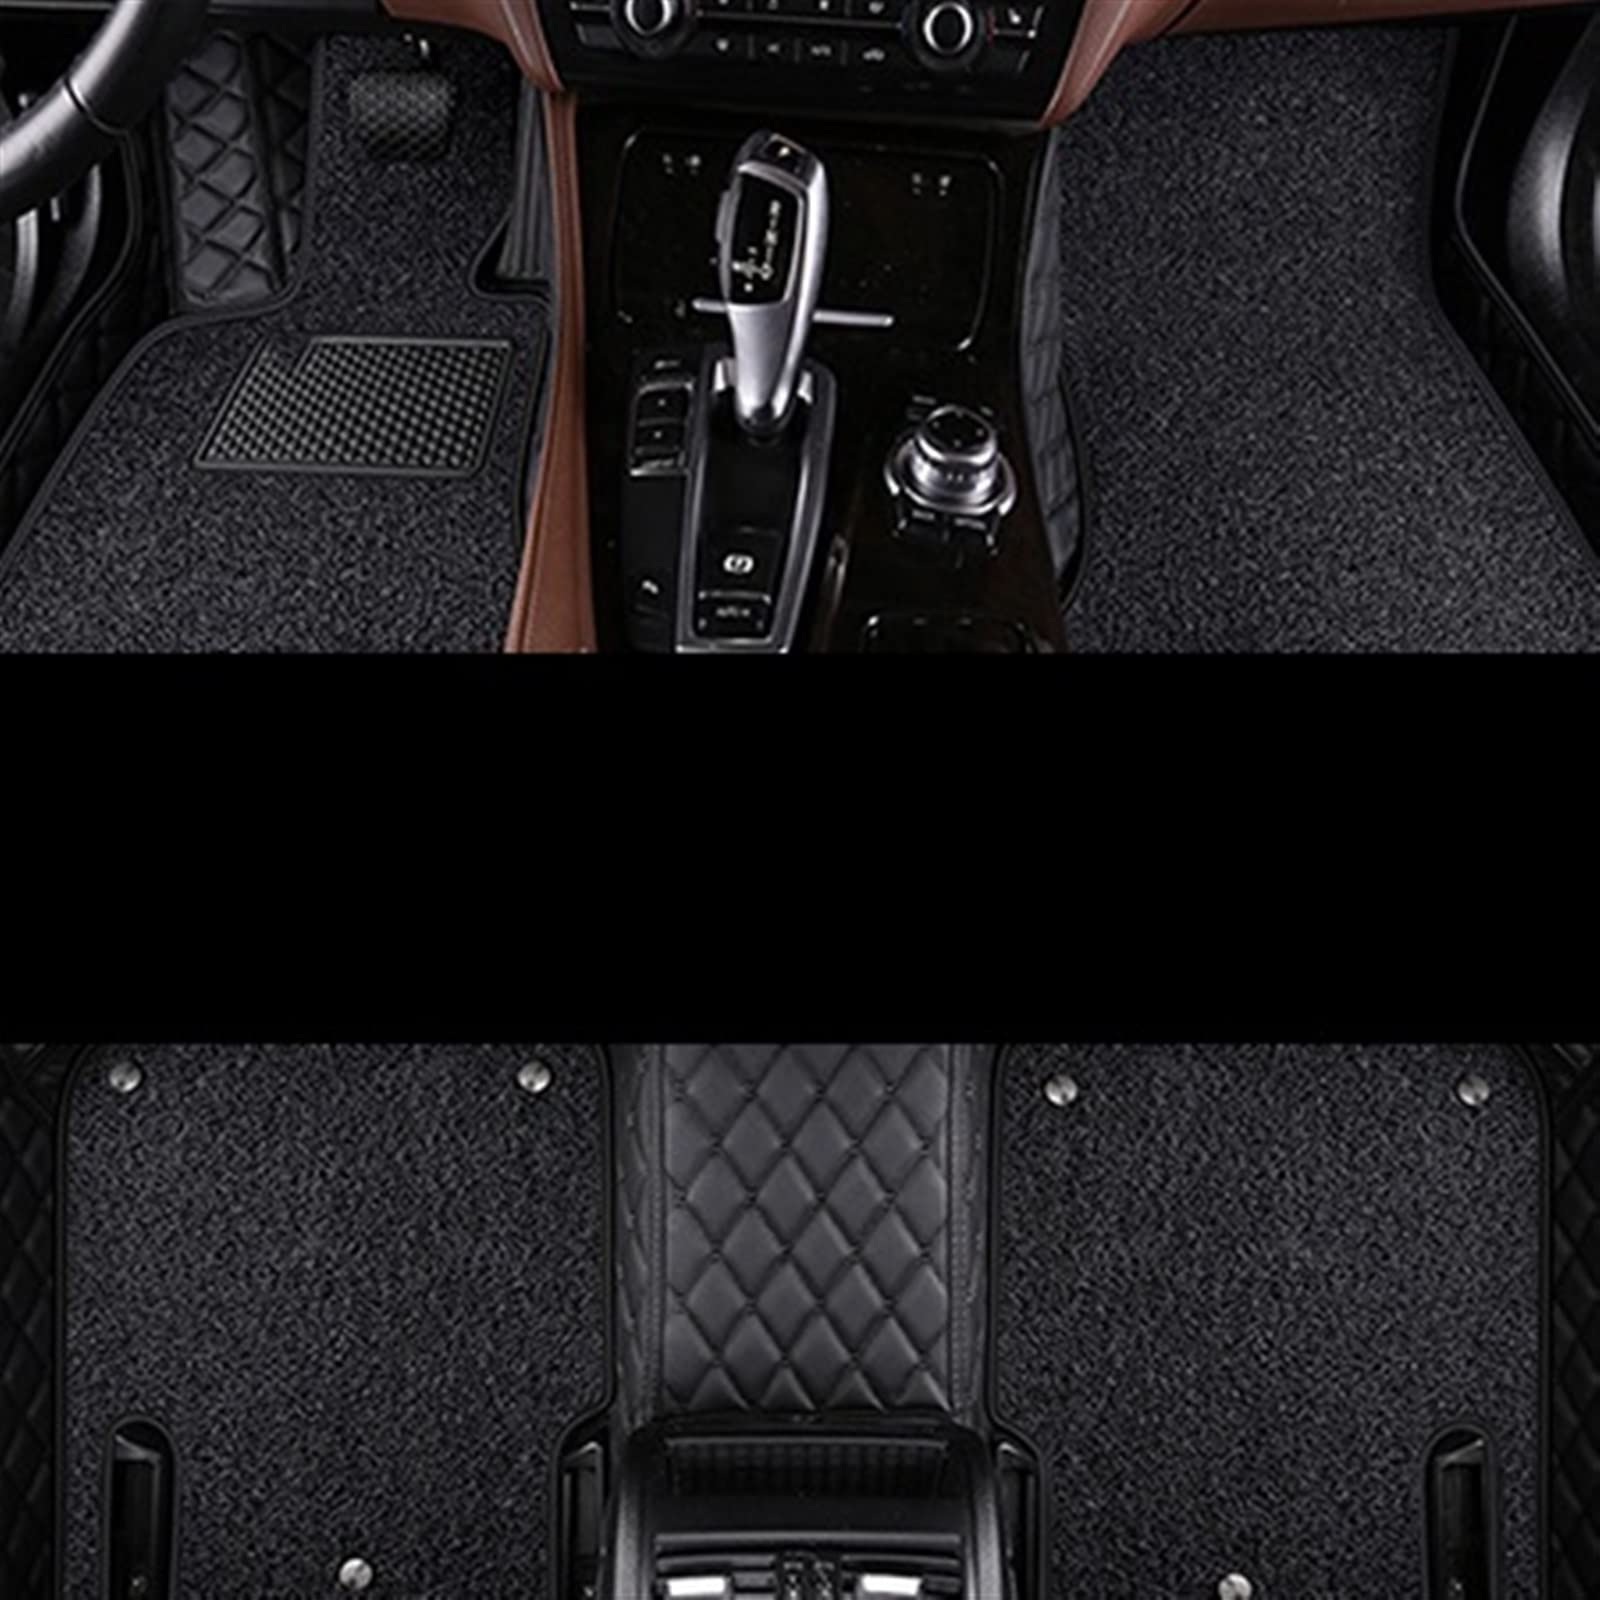 Auto Fußmatten Teppiche Für Toyota Für Land Cruiser Für Prado 150 2017 2016 2015 2014 (7 Sitze) Auto Fußmatten Tepiche(Alles schwarz,6pcs) von SKINII